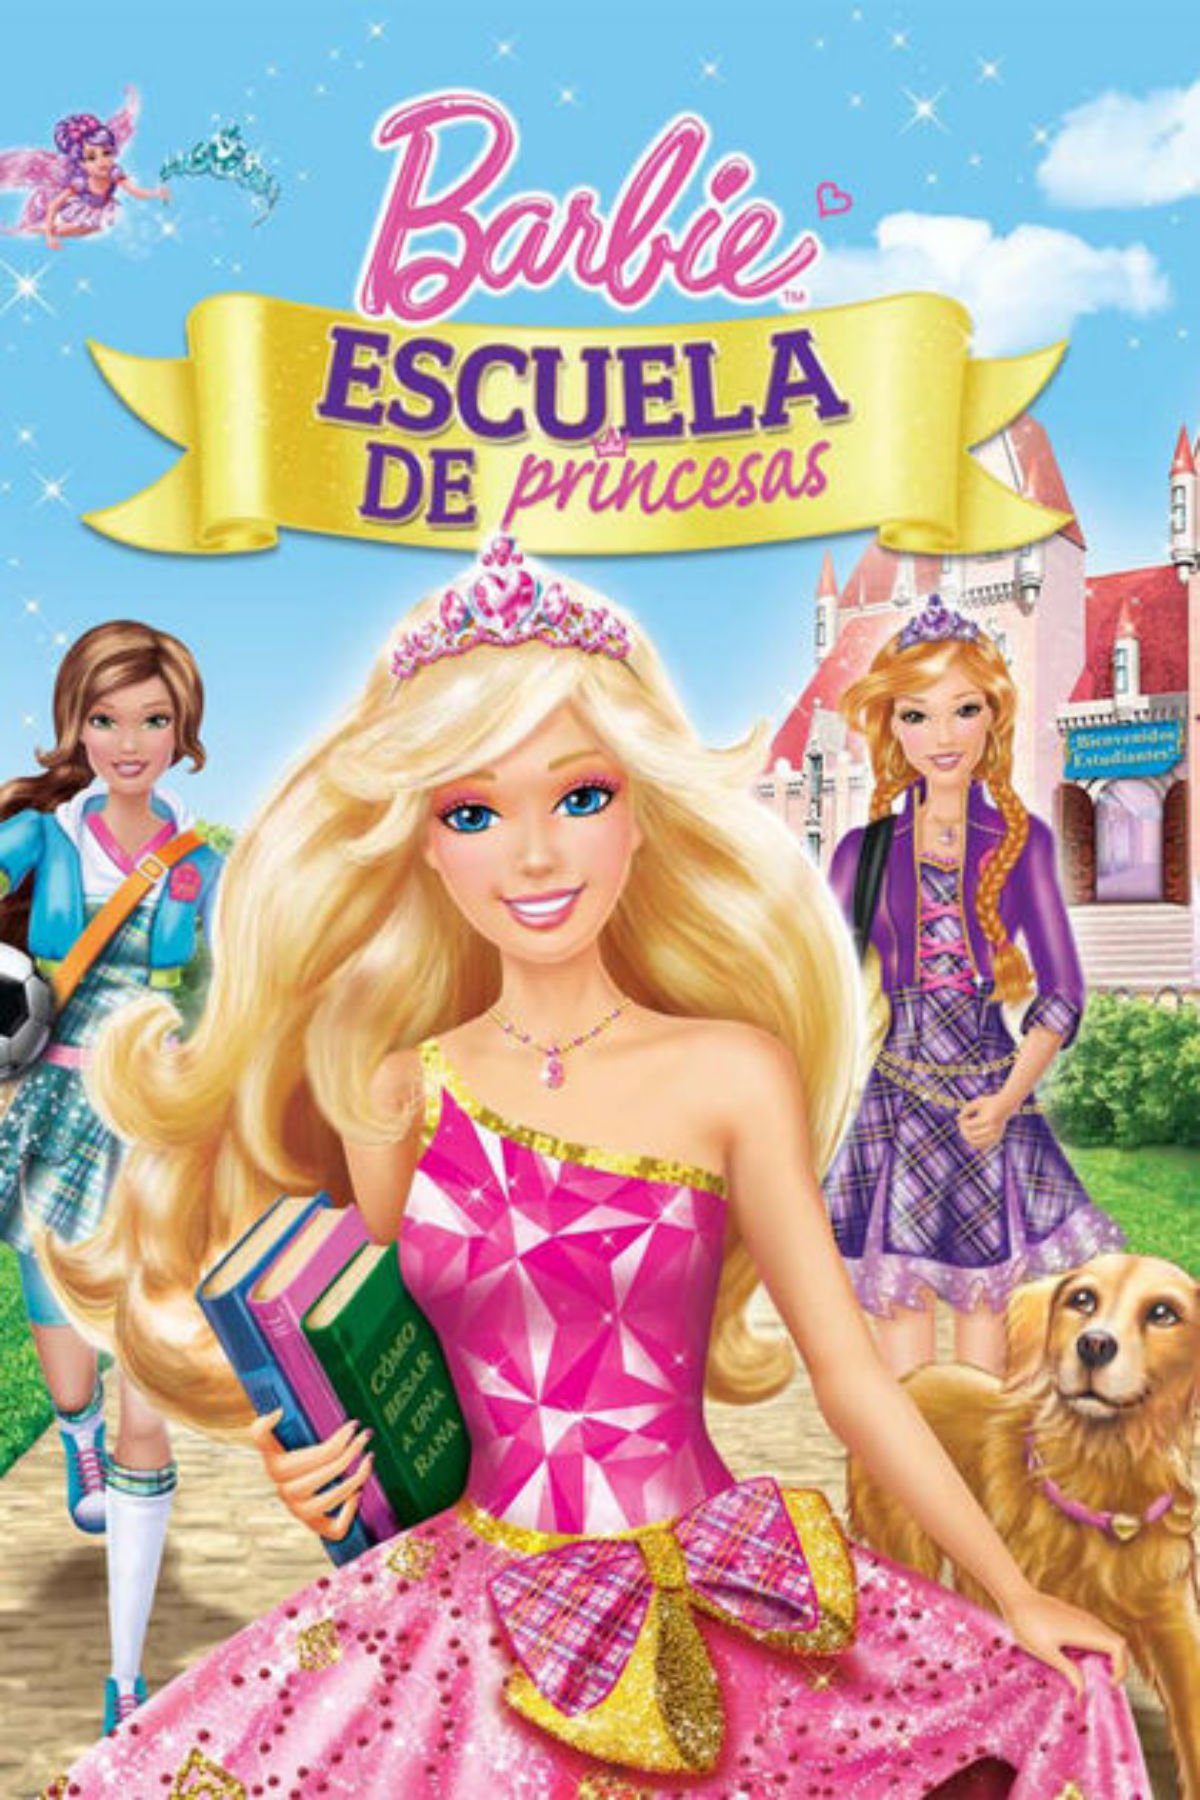 Infantil Acercarse Revelar Barbie: Escuela de princesas - Película 2011 - SensaCine.com